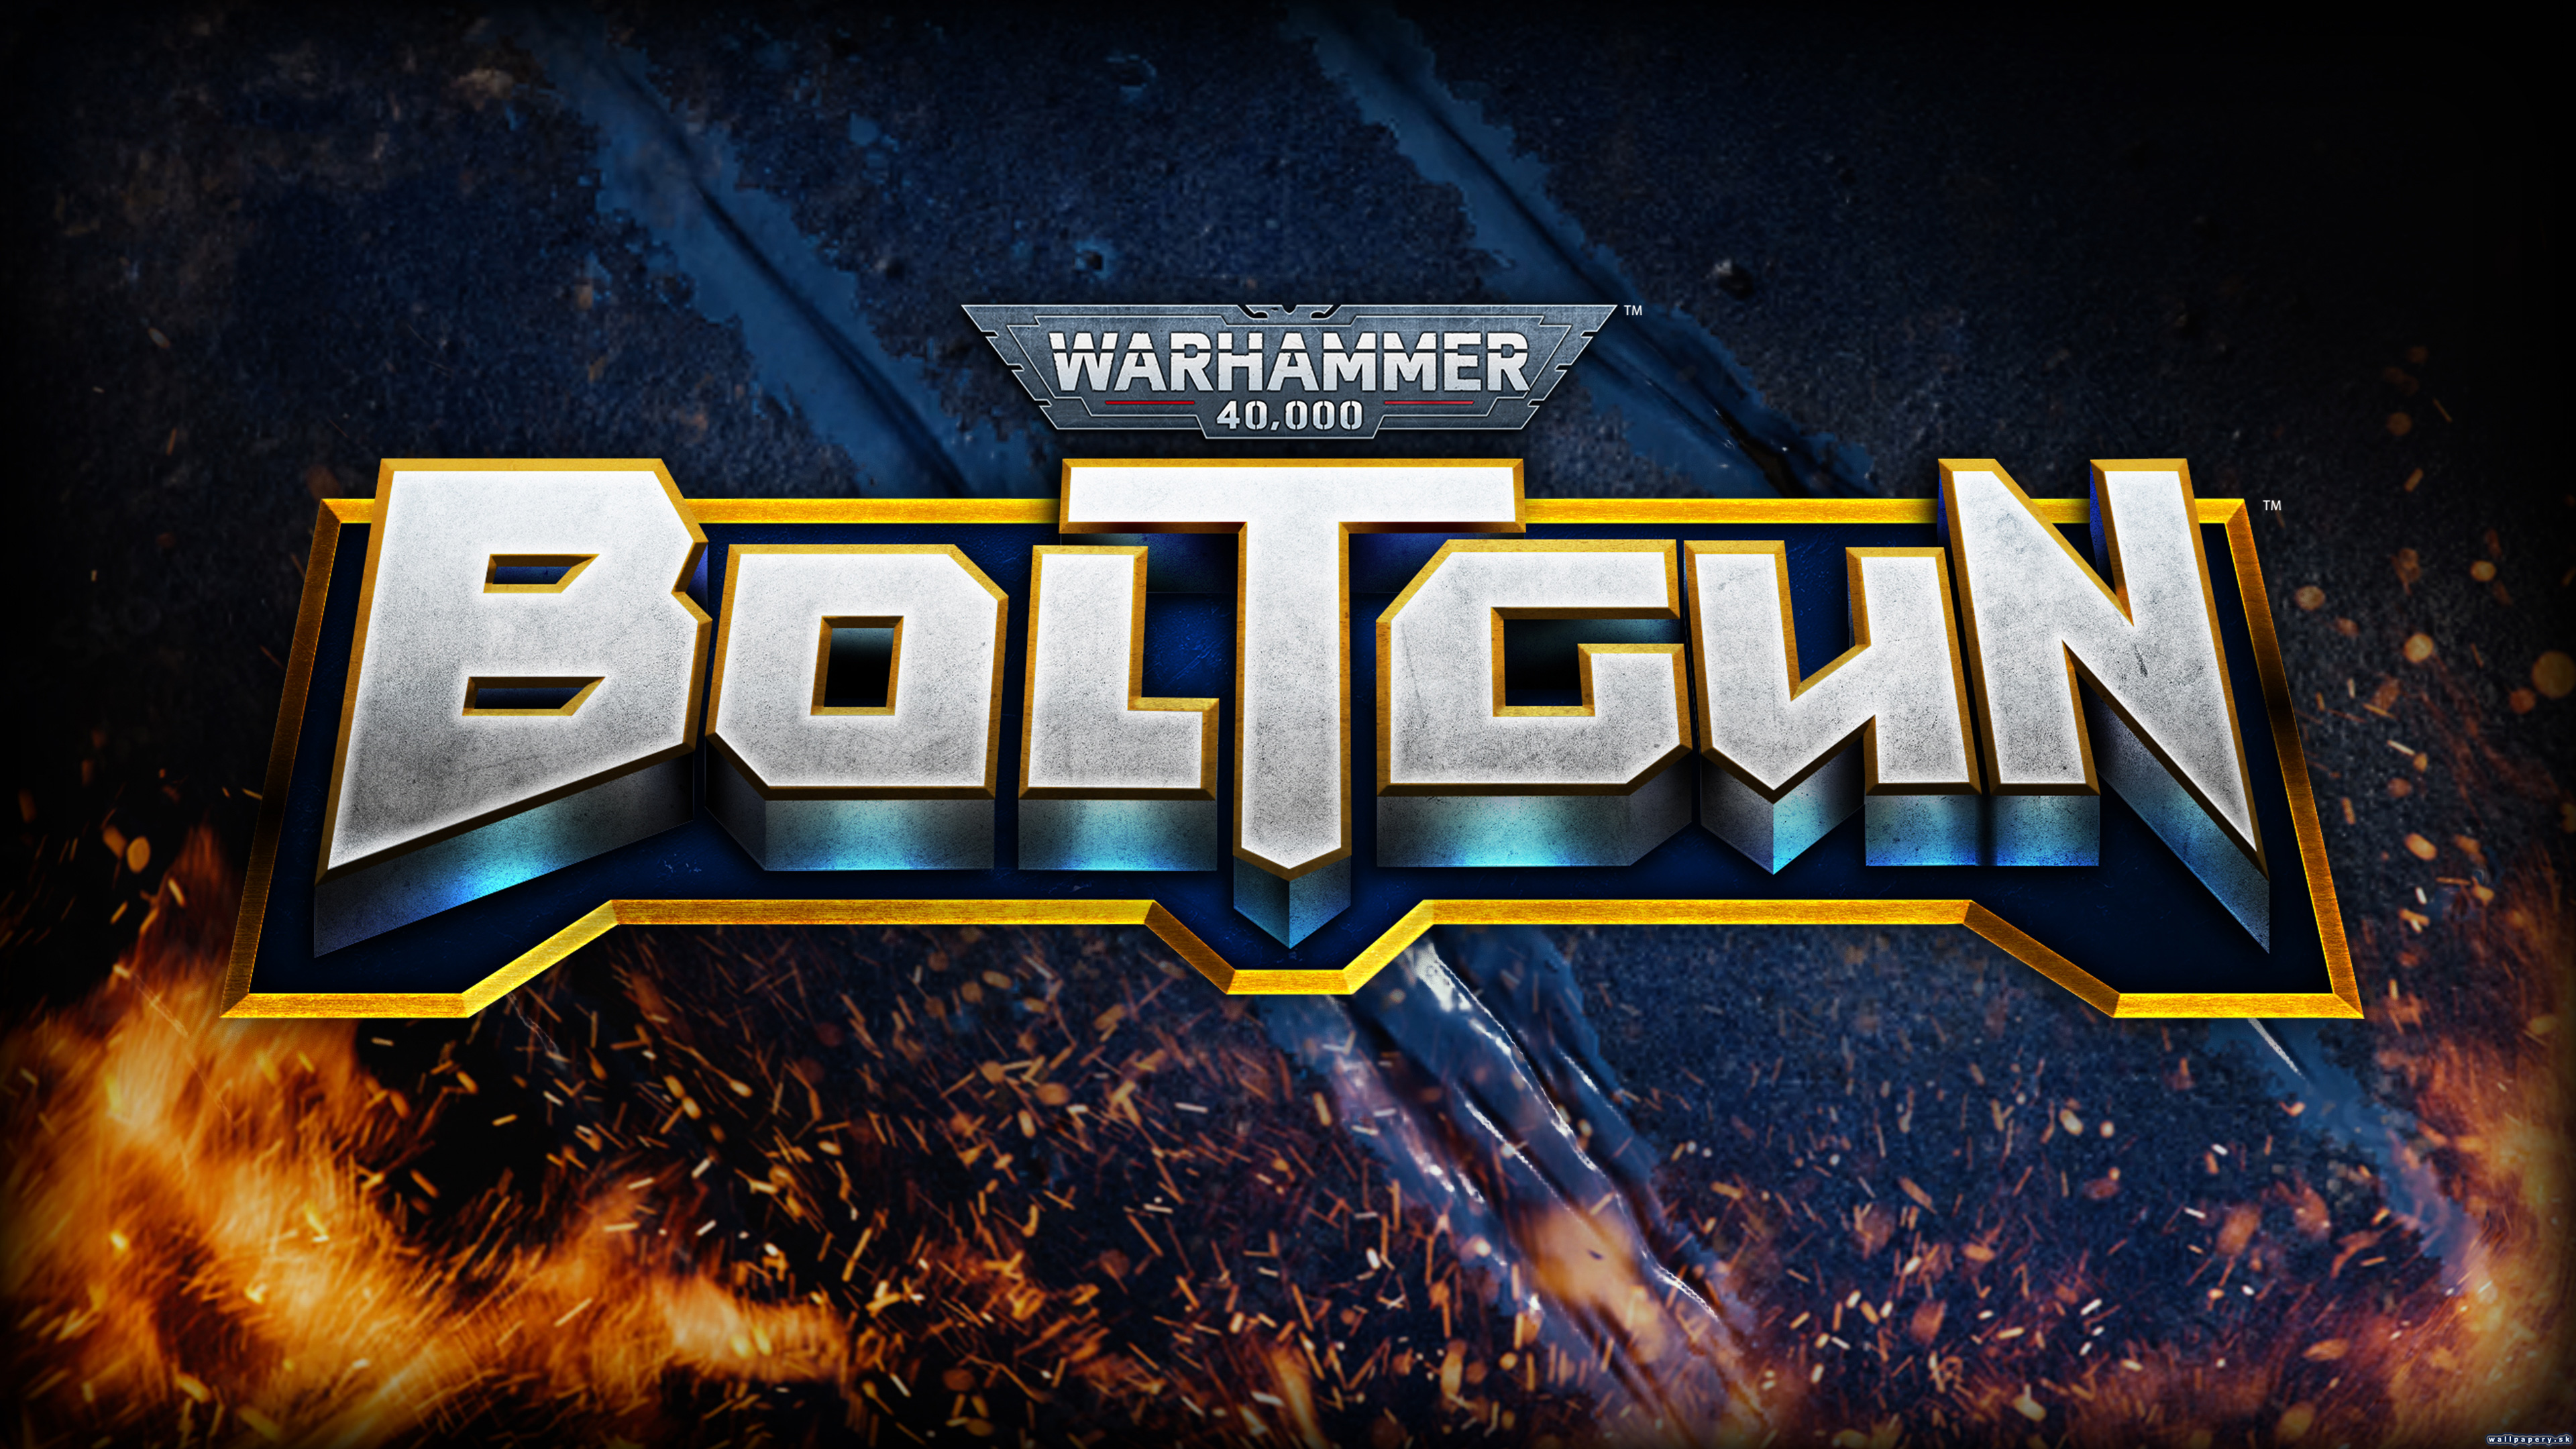 Warhammer 40,000: Boltgun - wallpaper 2